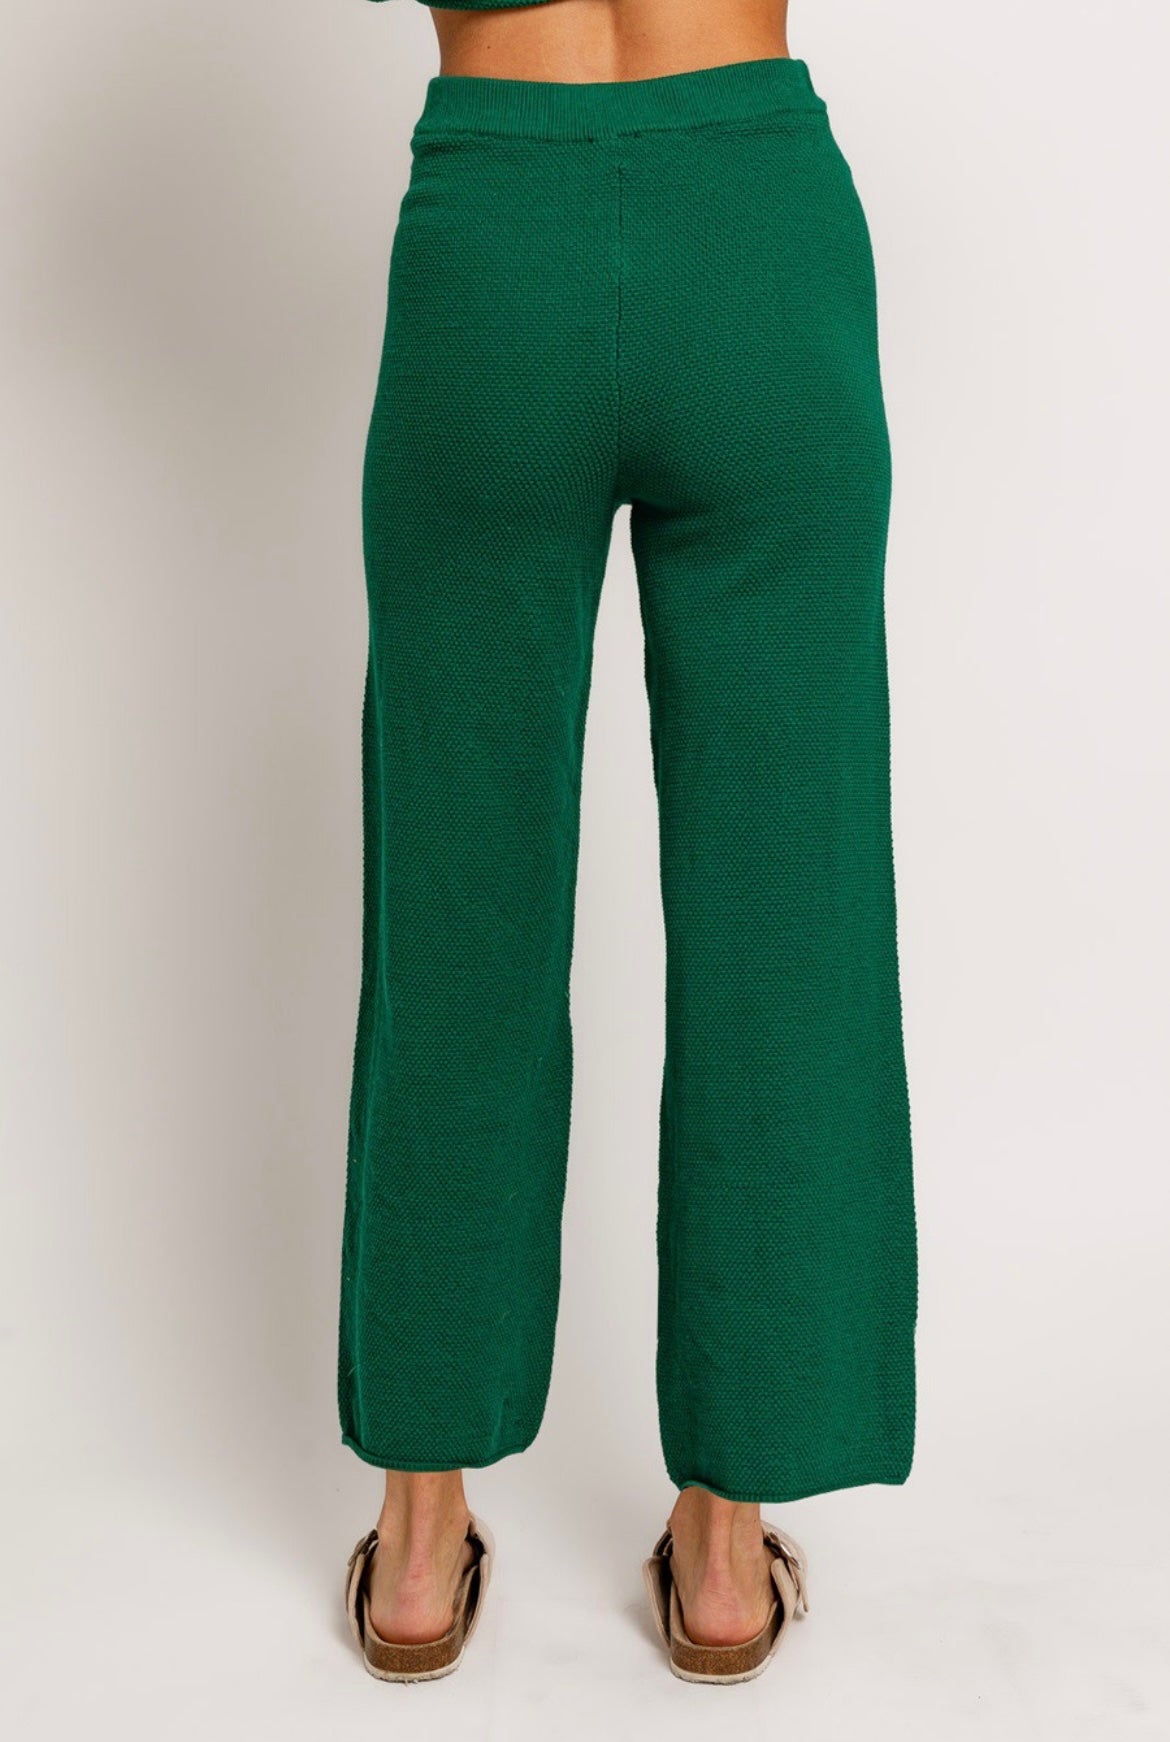 Green knit pants